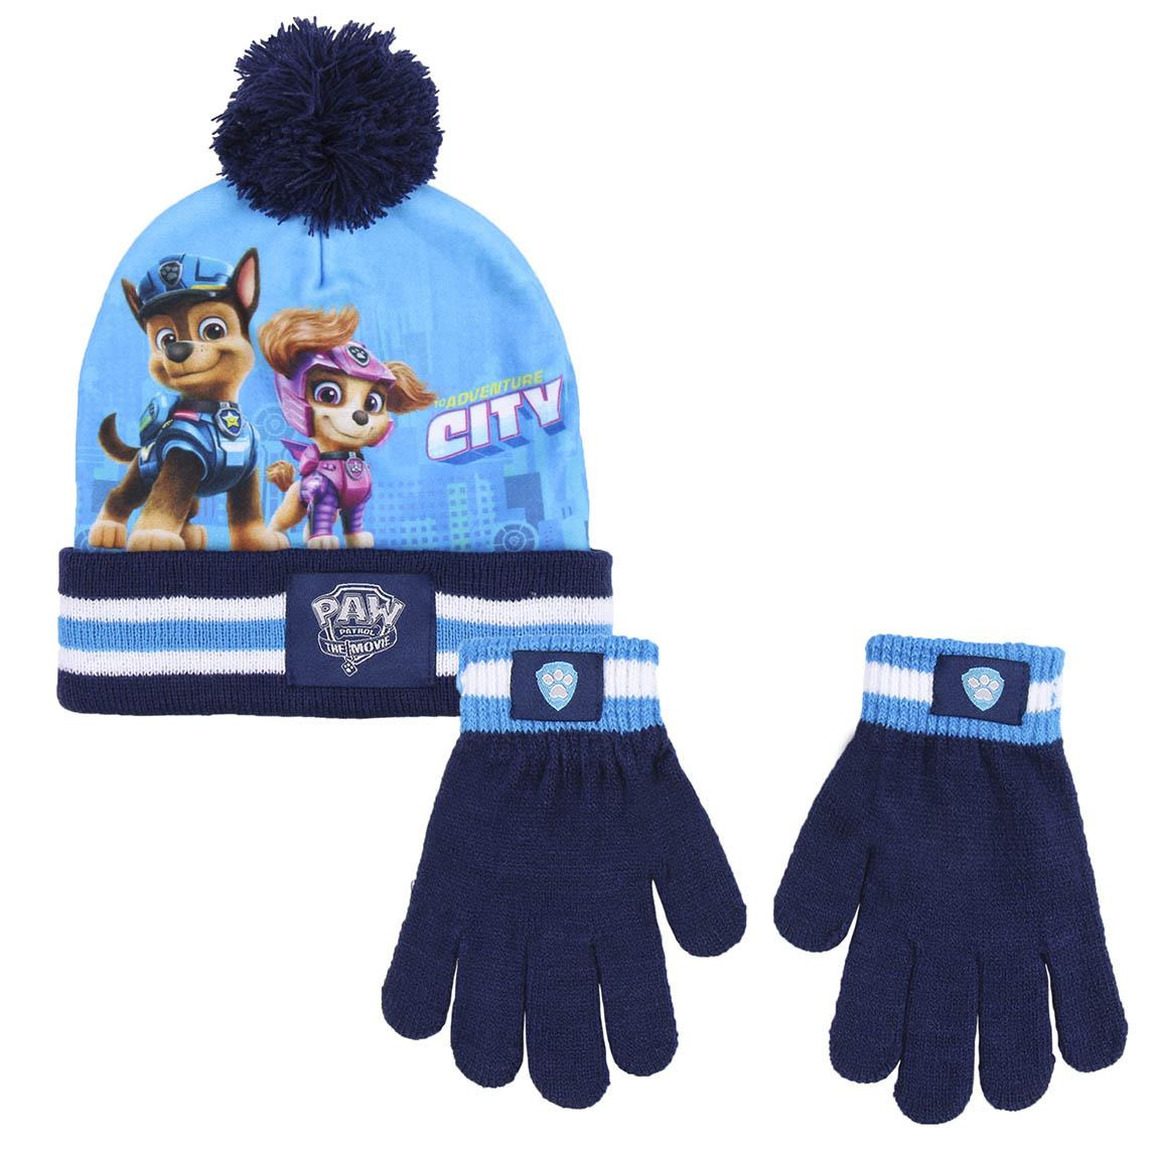 Levering gelijkheid ik zal sterk zijn Paw Patrol winter set blauw voor kinderen met muts en handschoenen -  Partyshopper Kleding accessoires winkel